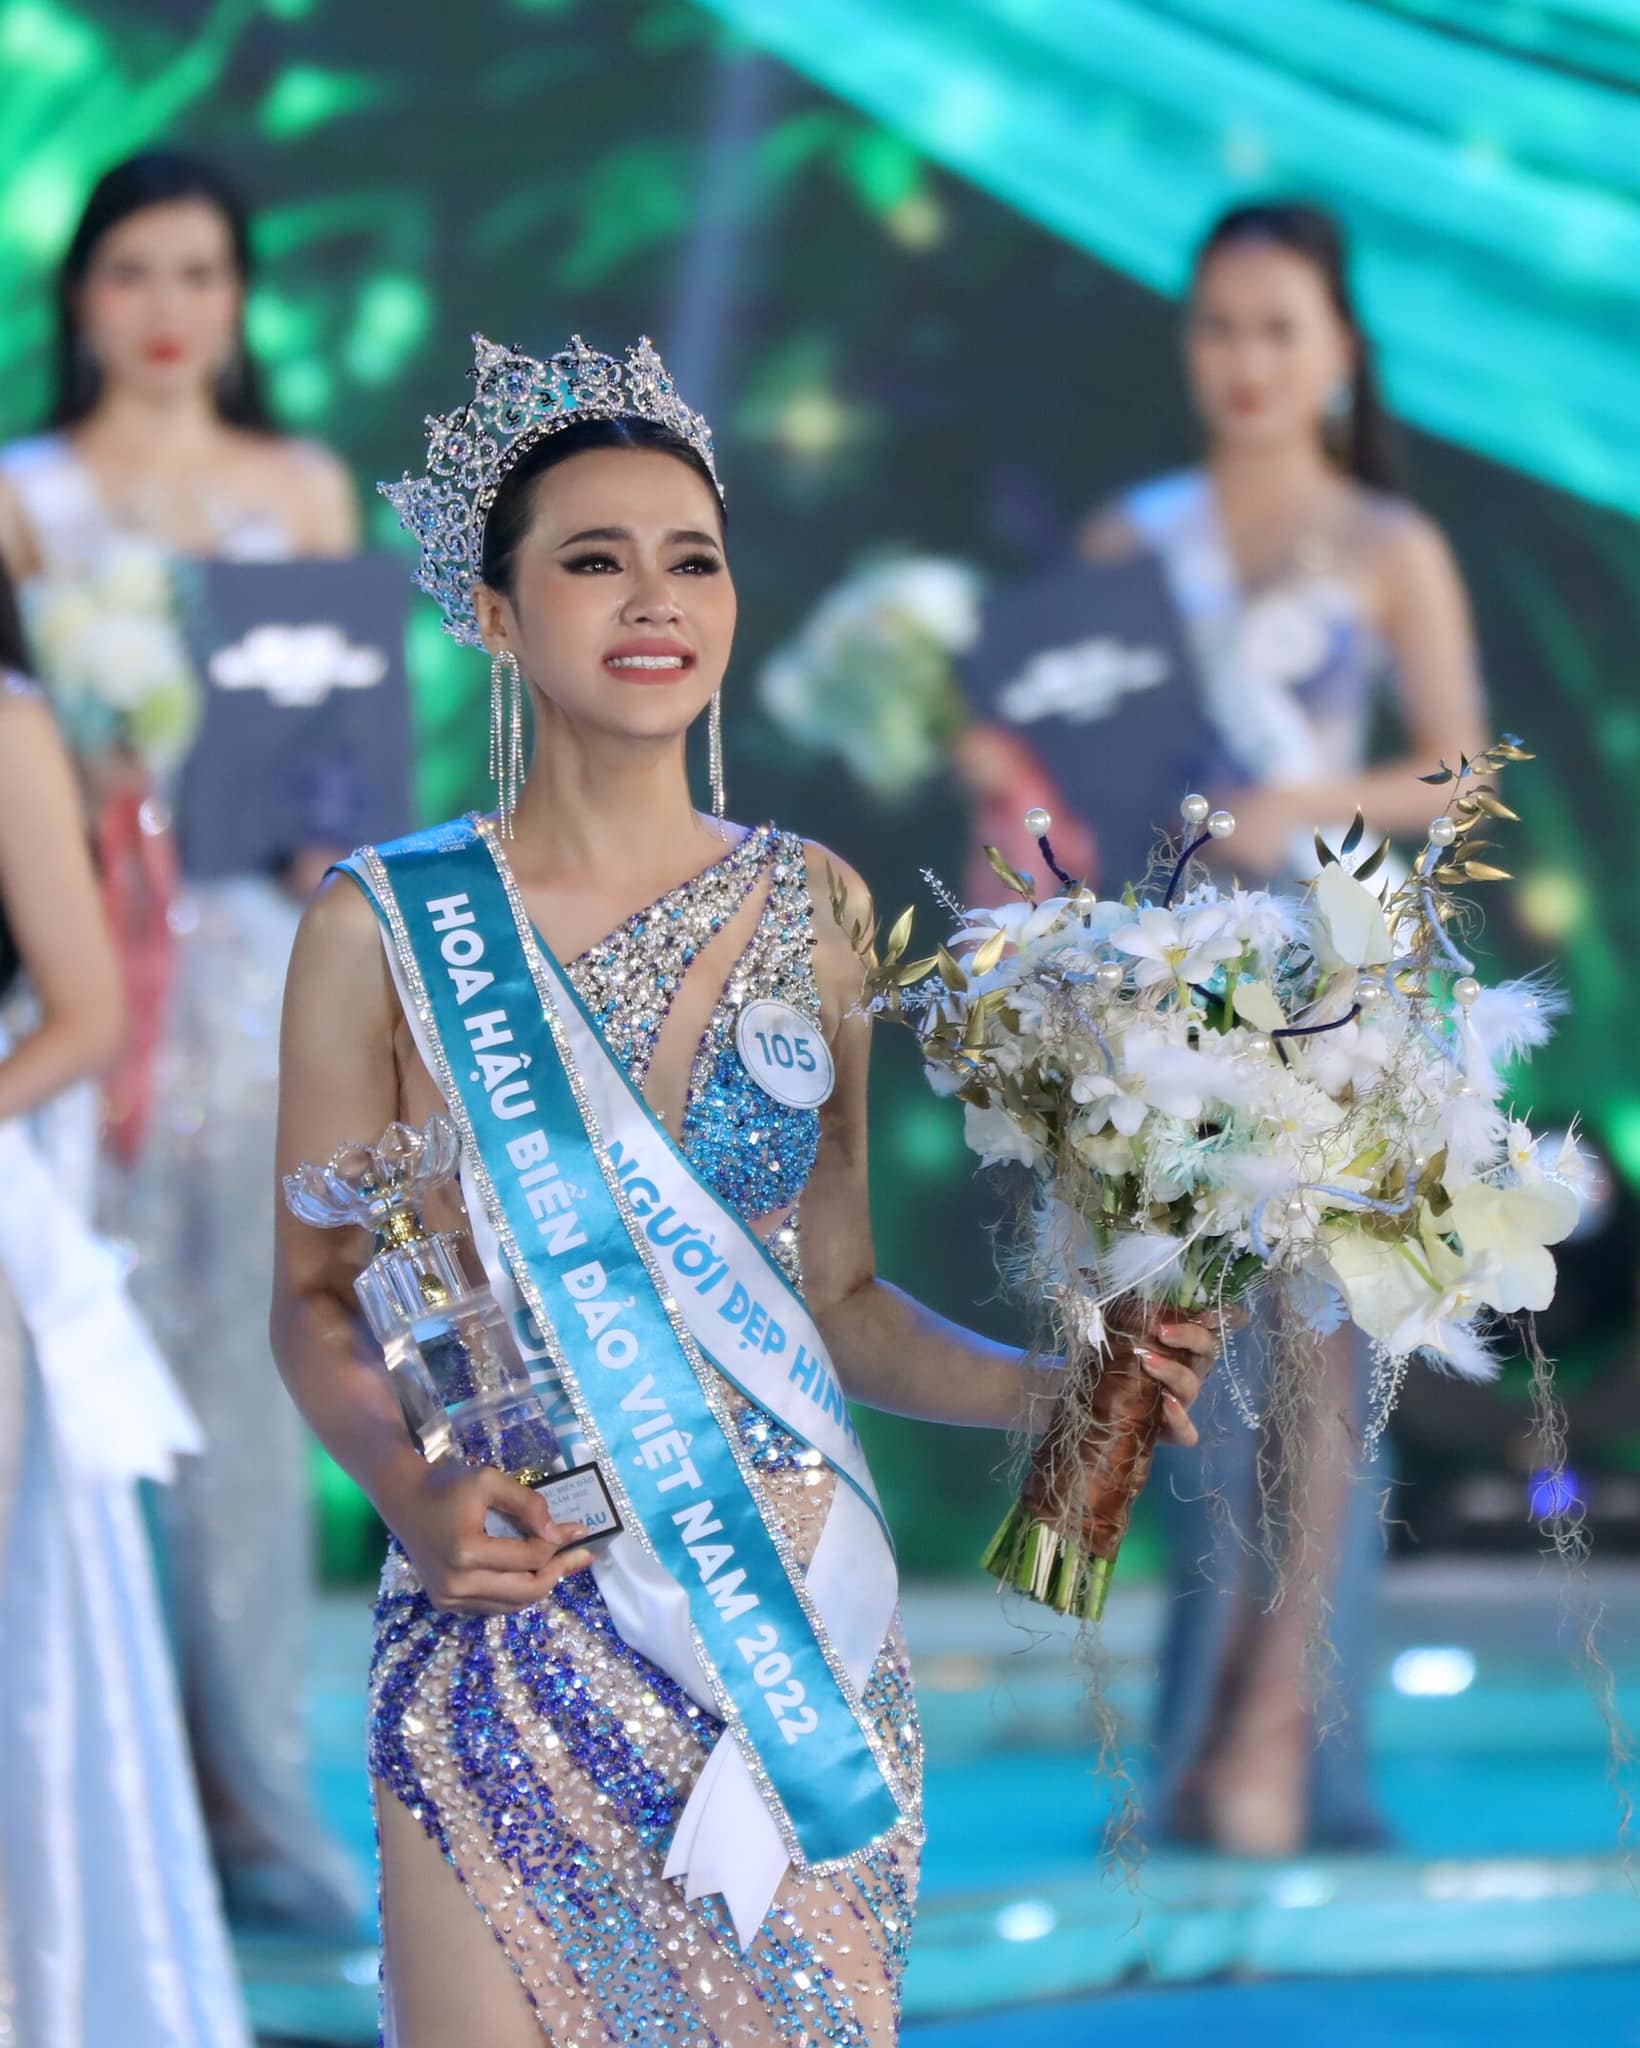 10 Hoa hậu đăng quang trong năm 2022: Người đi thi quốc tế sau 3 ngày, người trả vương miện vì lý do đặc biệt  - Ảnh 10.